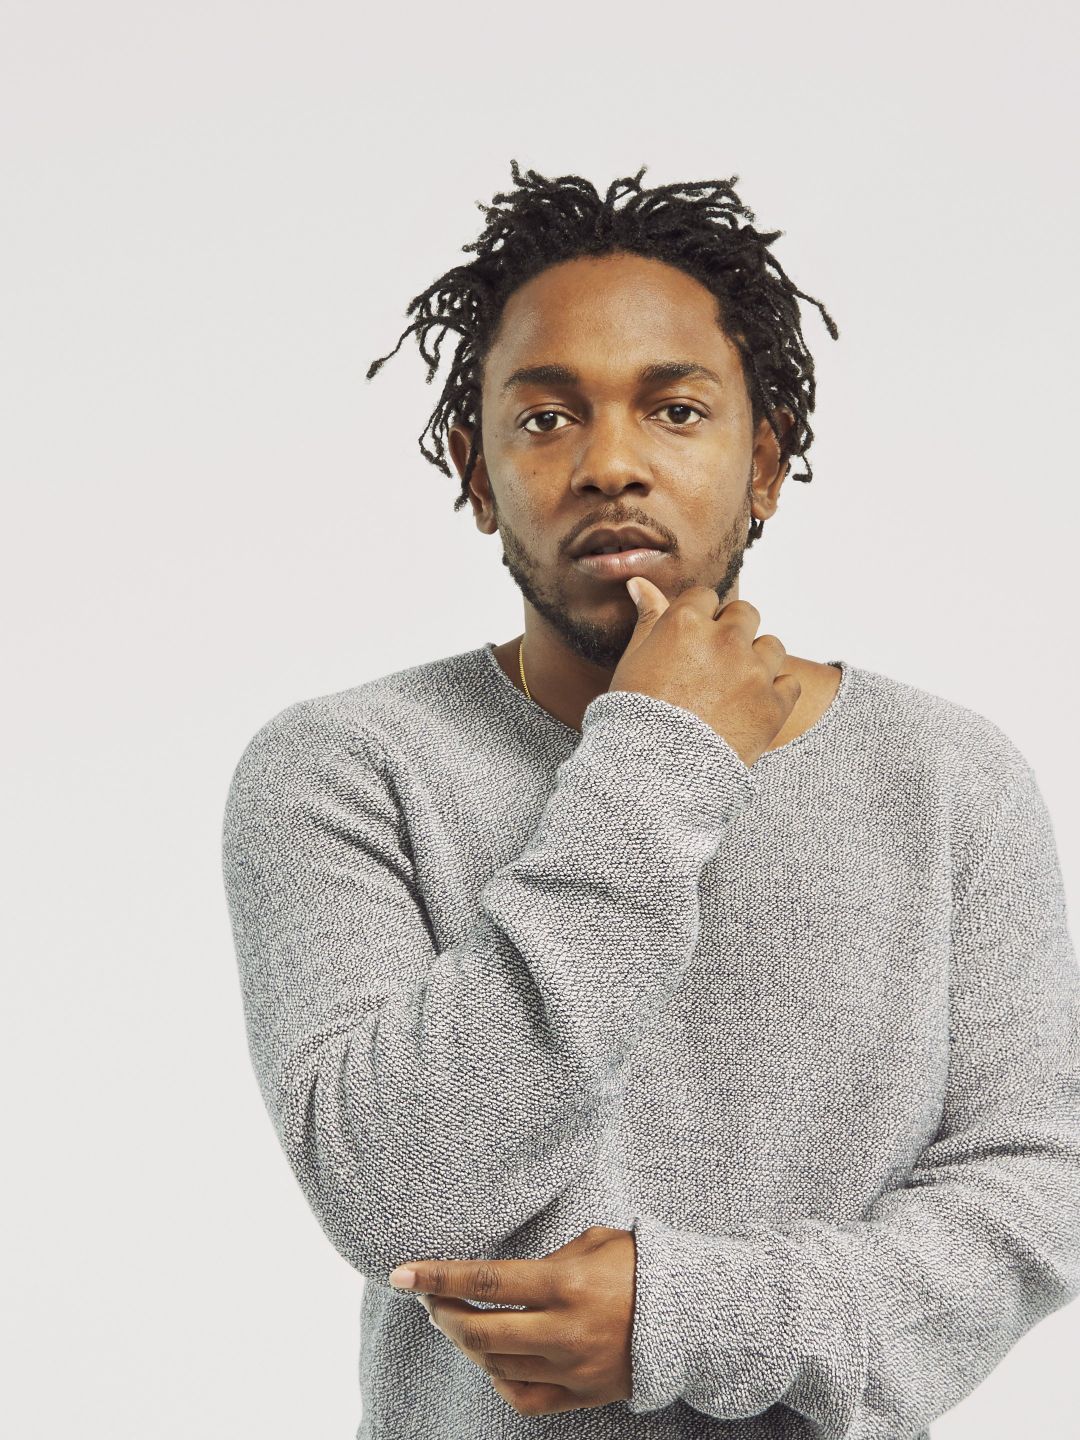 Kendrick Lamar early life